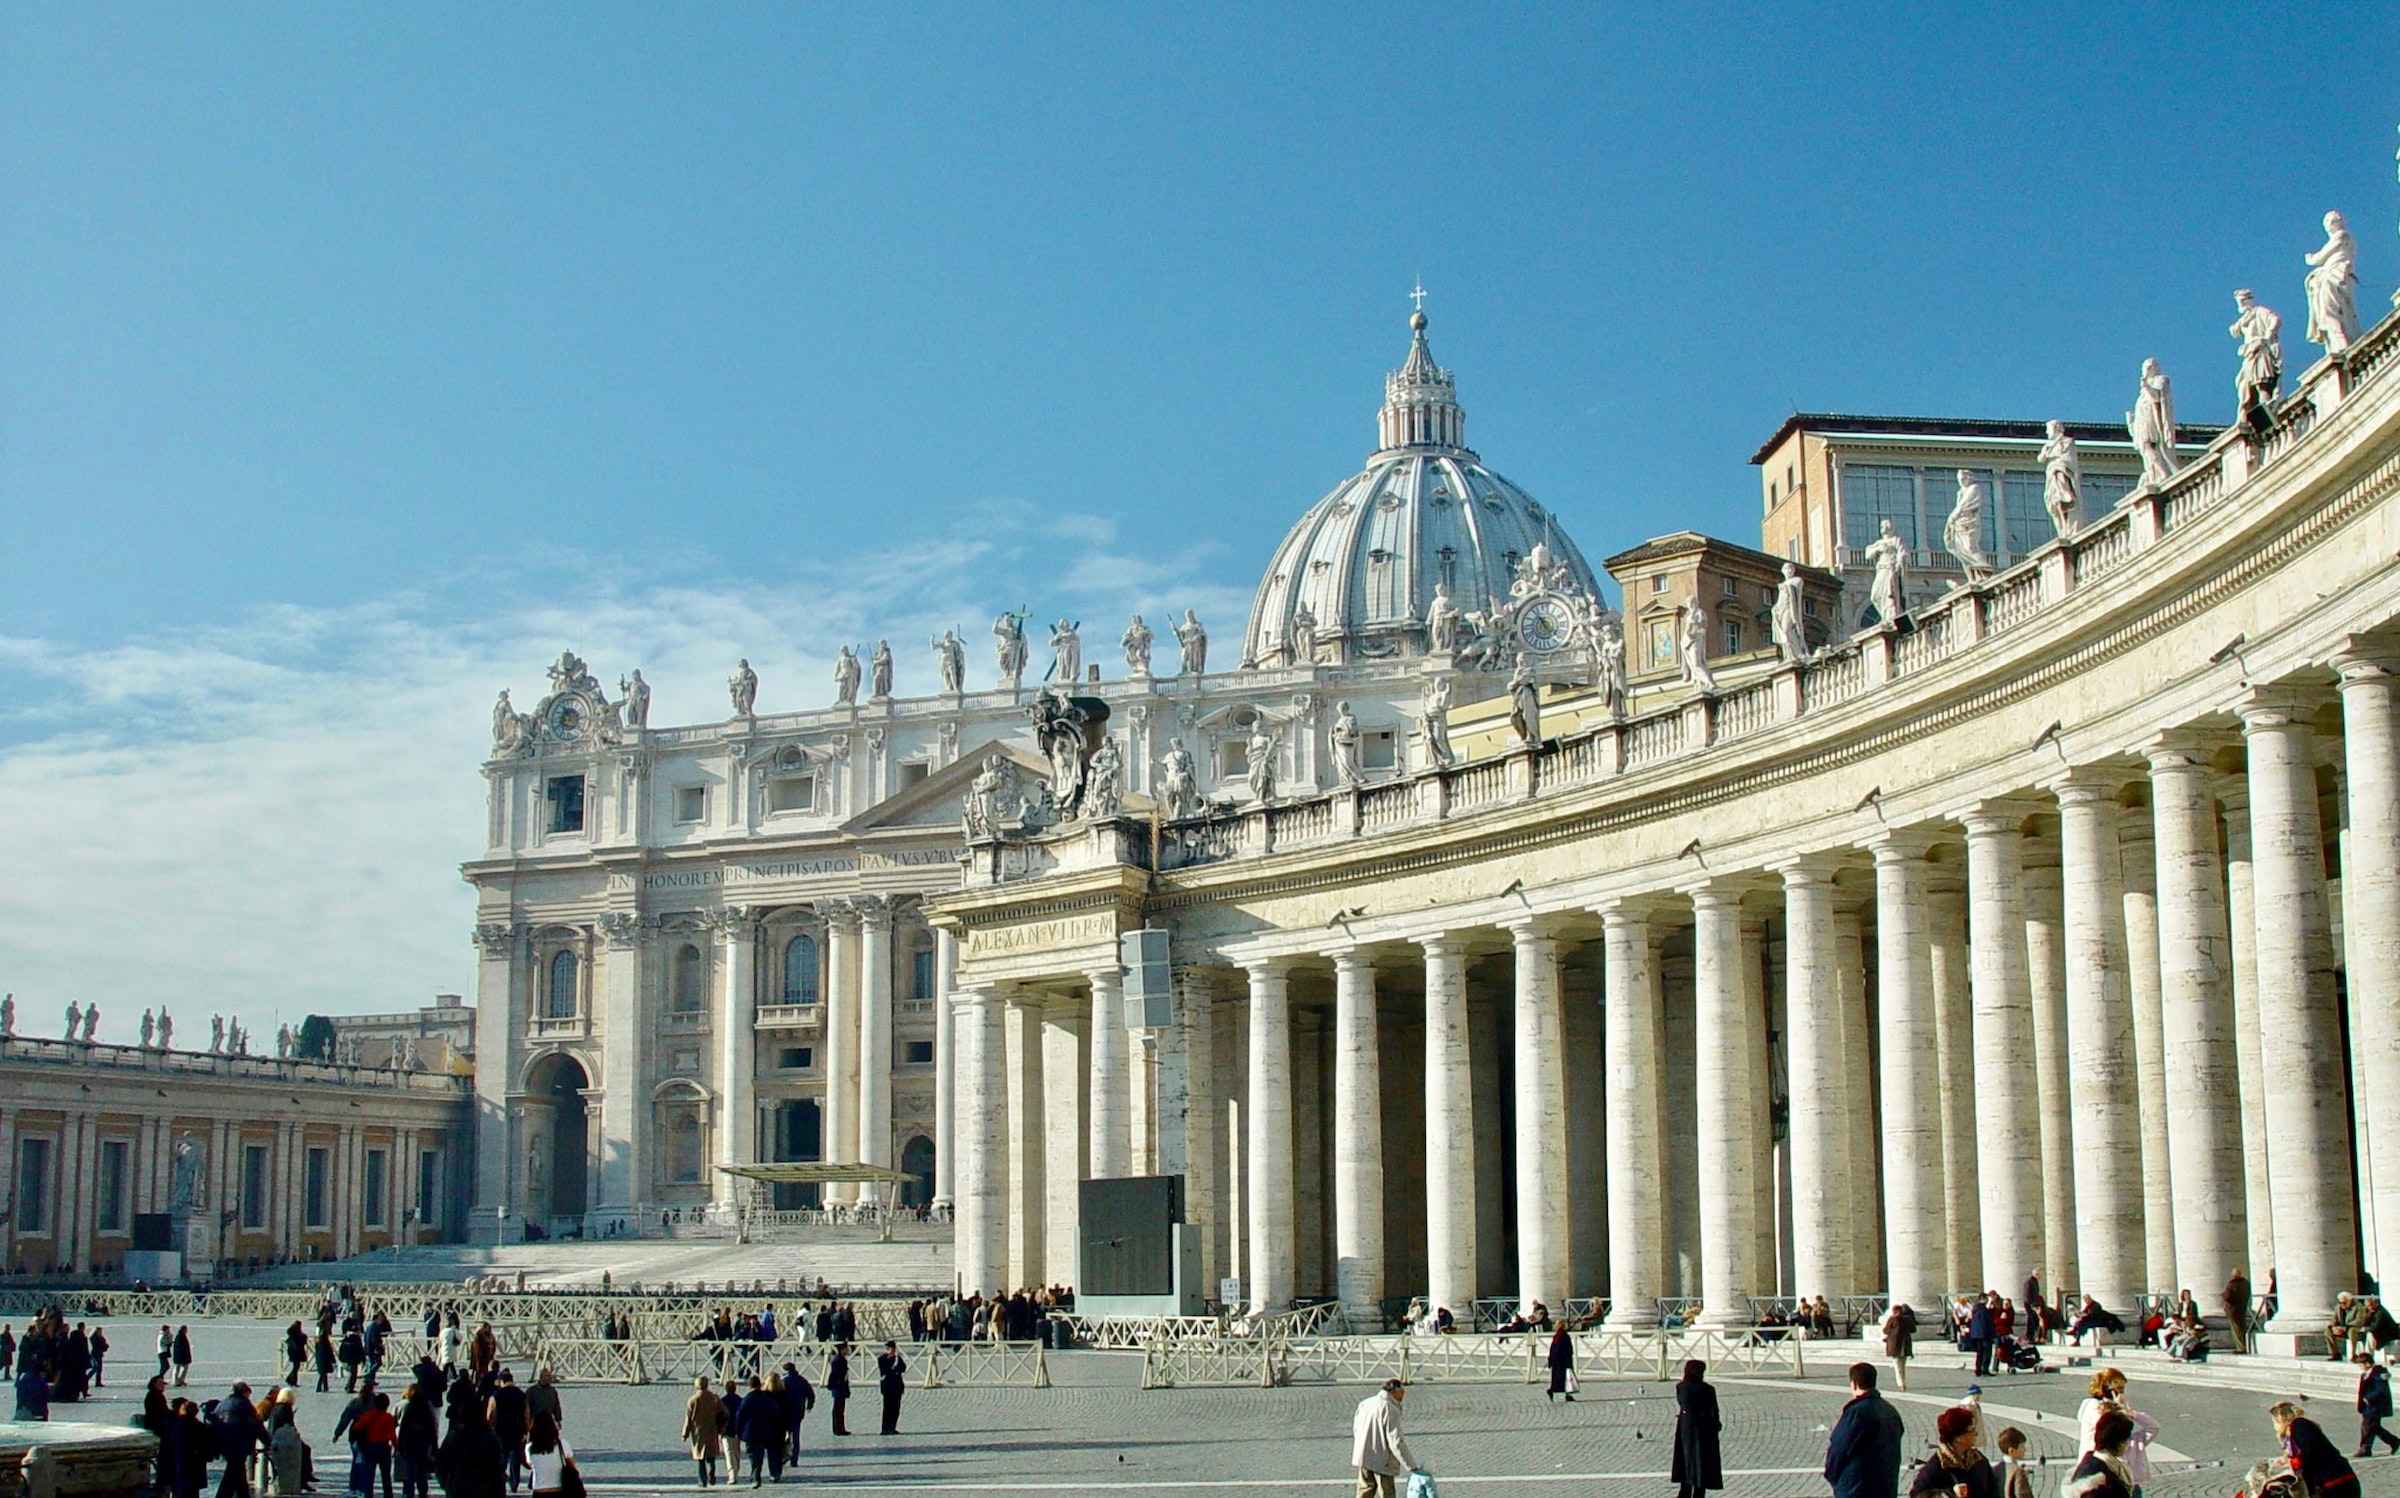 Vatican City tours, The Sistine Chaapel, The Vatican Museum, St. Peter’s Basilica, St. Peter’s Square, Vatican Necropolis, Travcus